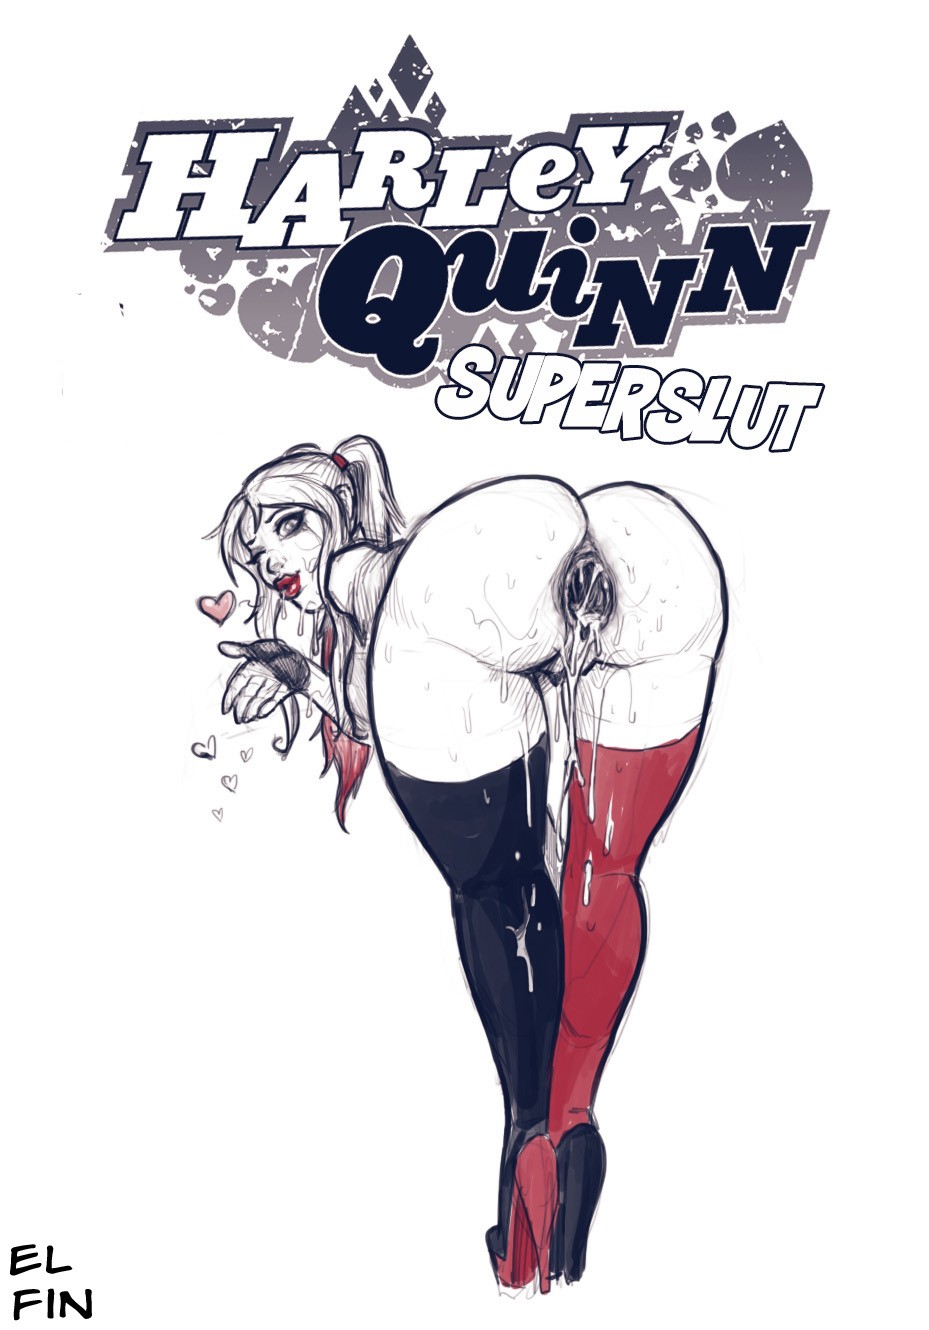 Harley Quinn Superslut - 3a22457571950a6528a76f6332cc2db8